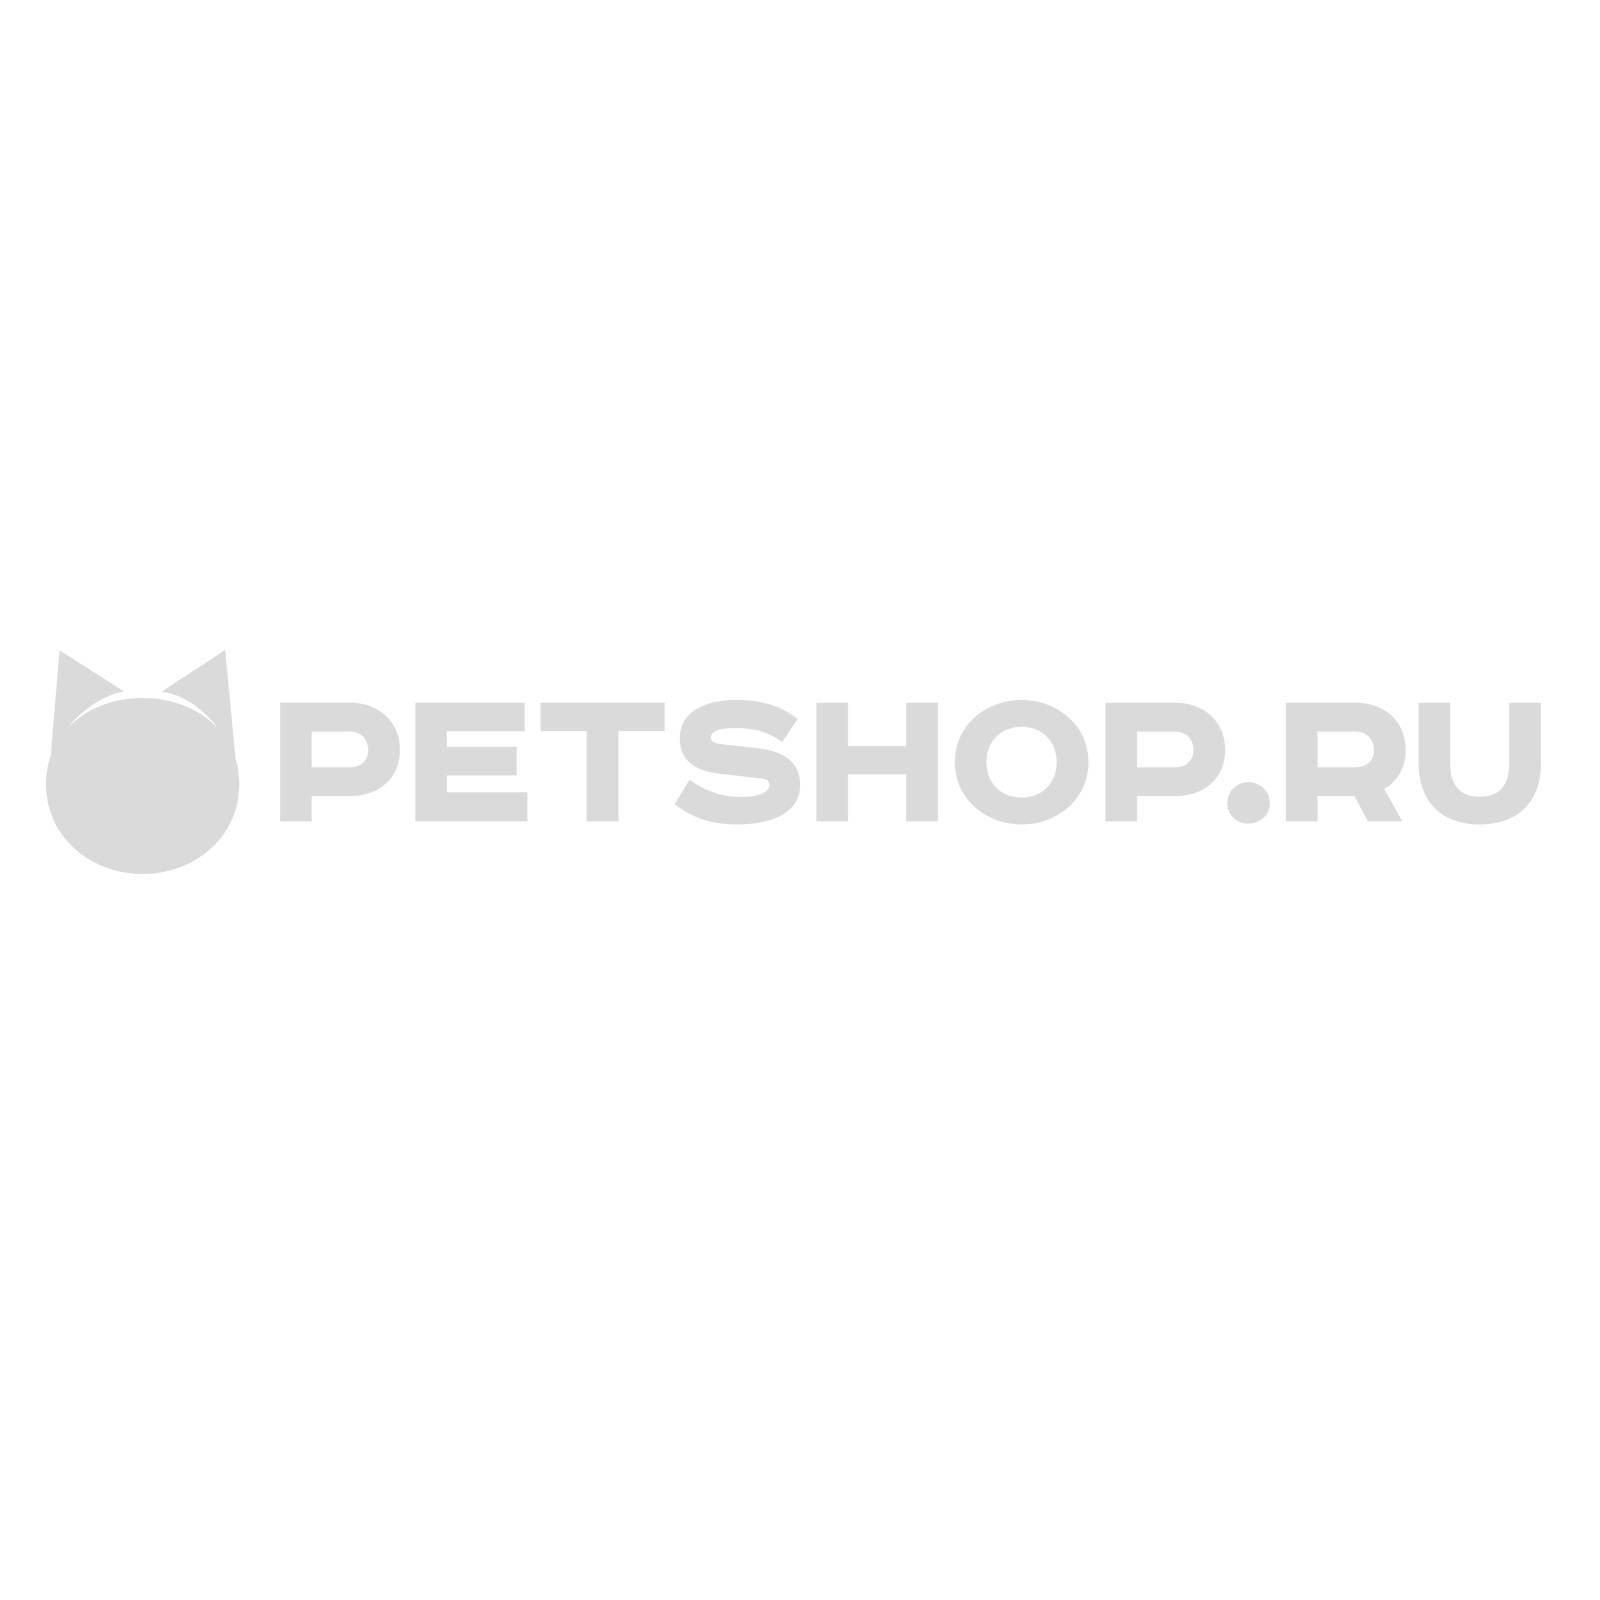 Ретшоп ру. Petshop магазин. Petshop логотип. ПЕТШОП ру. Petshop ru интернет магазин Ростов.